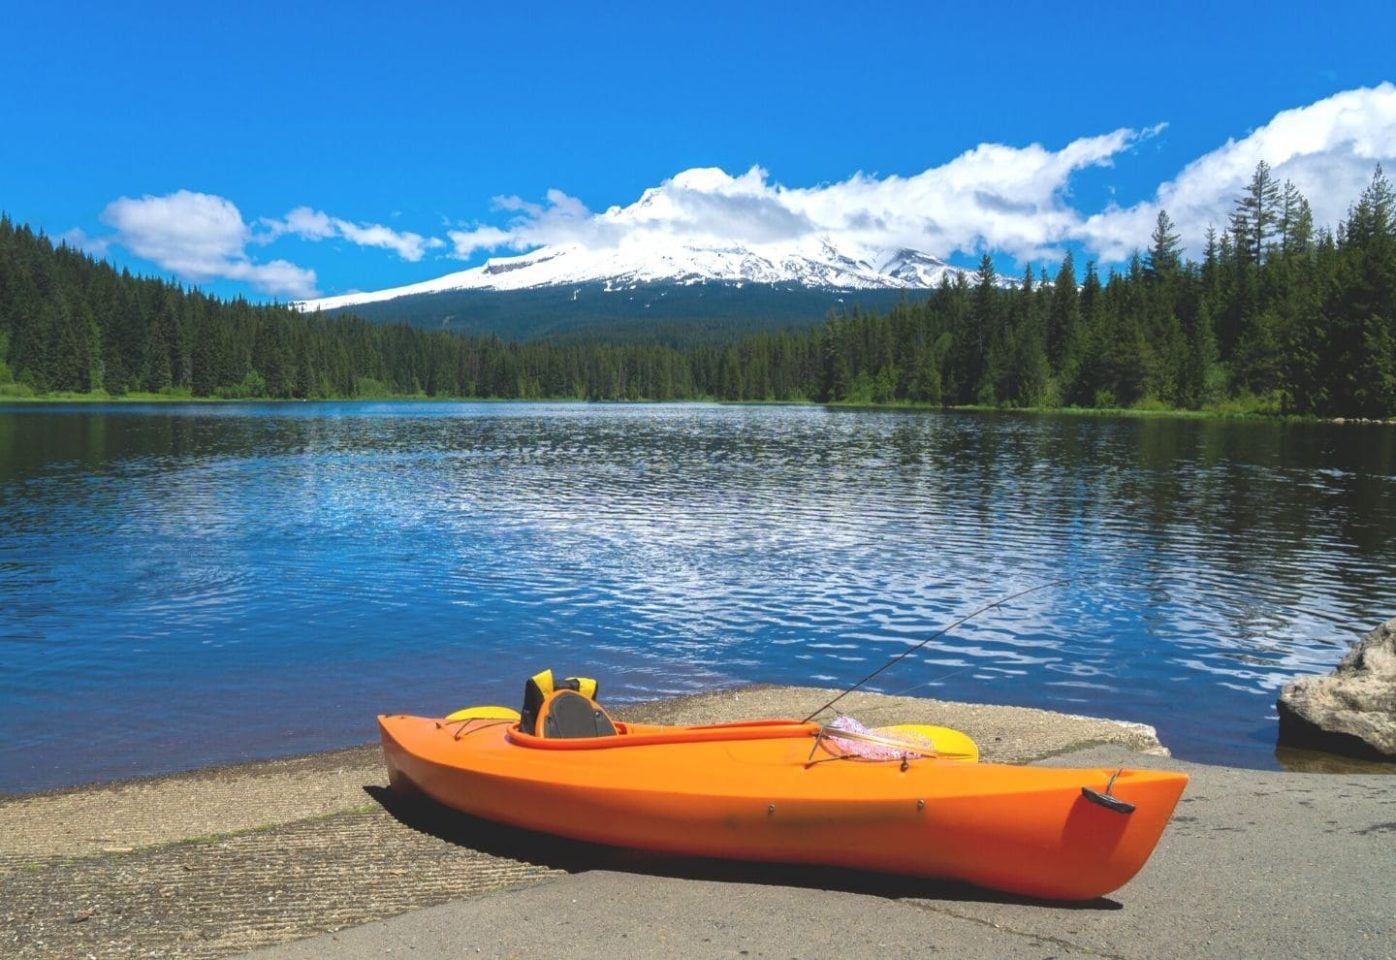 Kayak on a lake side